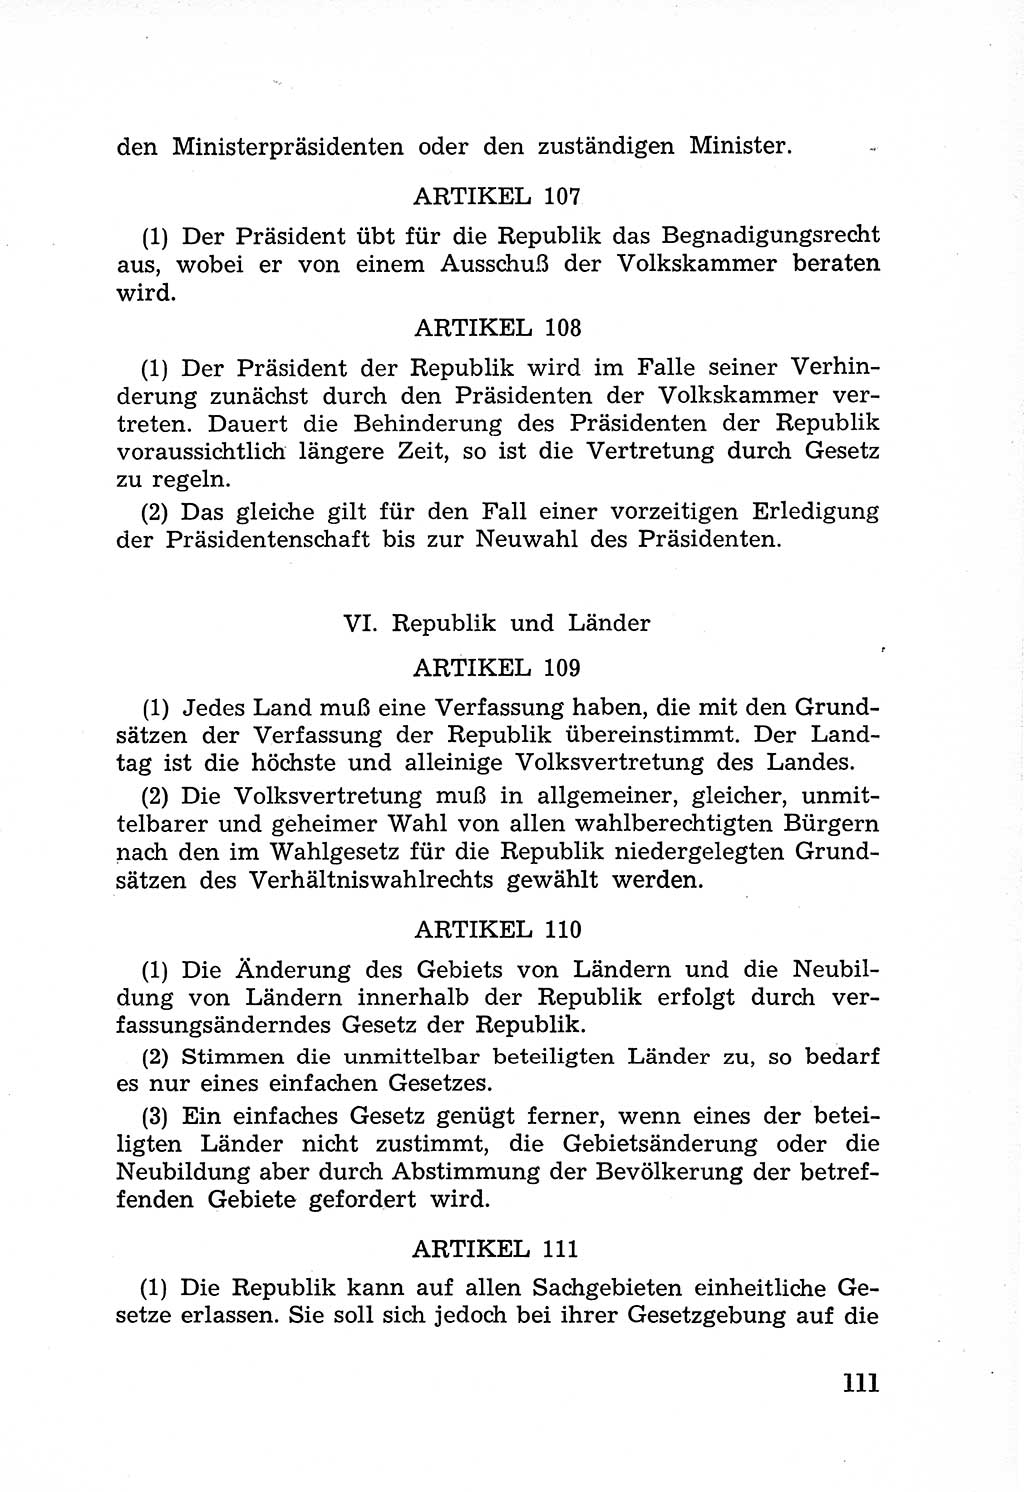 Rechtsstaat in zweierlei Hinsicht, Untersuchungsausschuß freiheitlicher Juristen (UfJ) [Bundesrepublik Deutschland (BRD)] 1956, Seite 111 (R.-St. UfJ BRD 1956, S. 111)